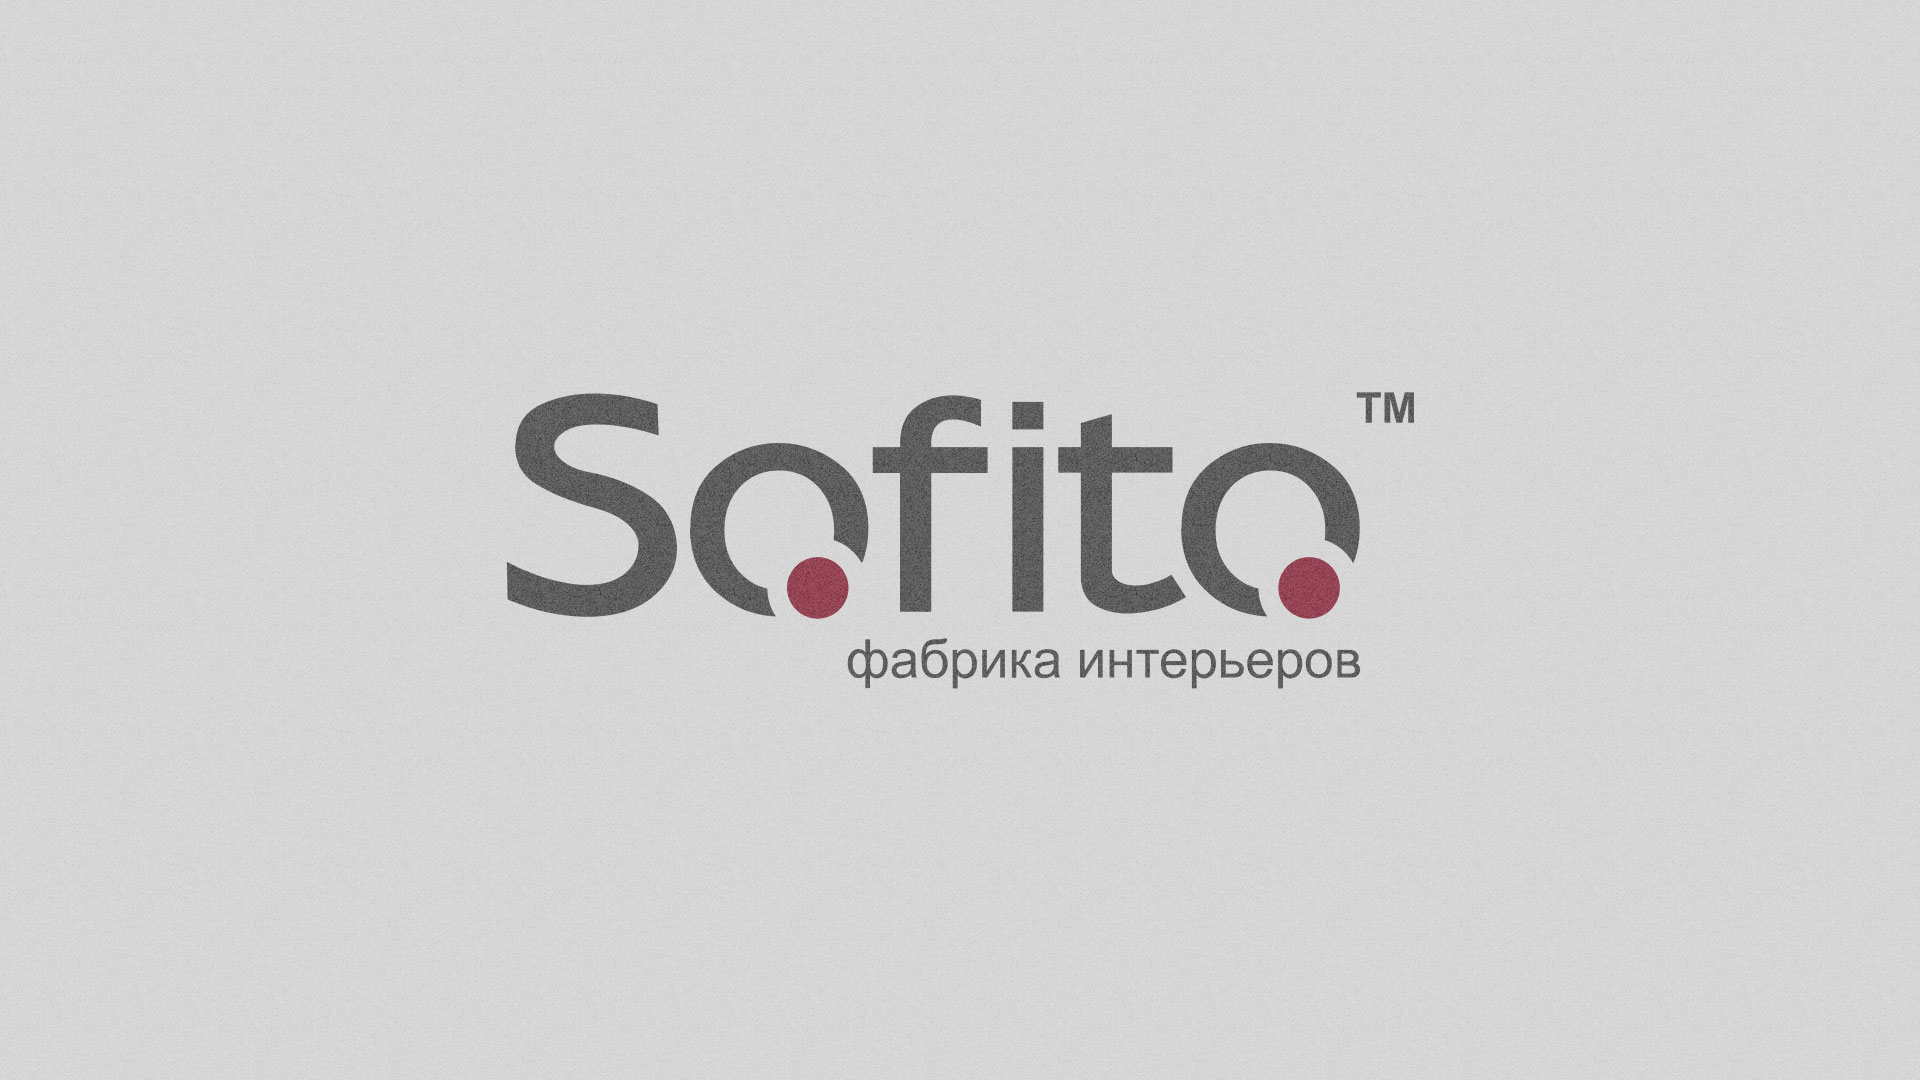 Создание сайта по натяжным потолкам для компании «Софито» в 